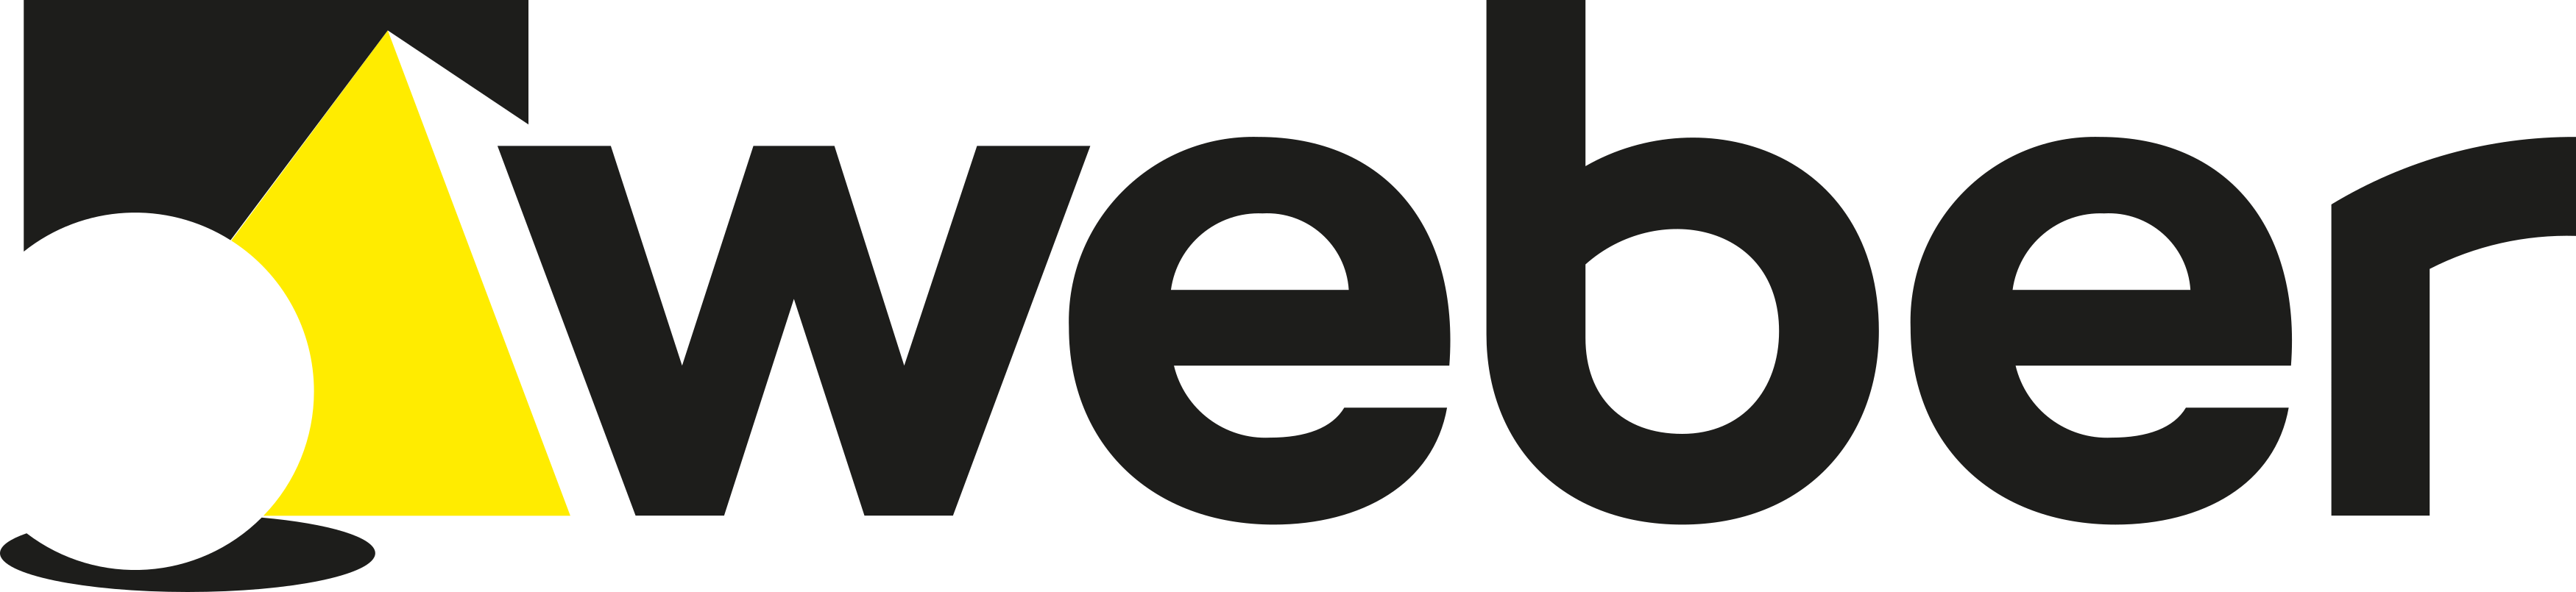 Weber Saint-Gobain Logo.